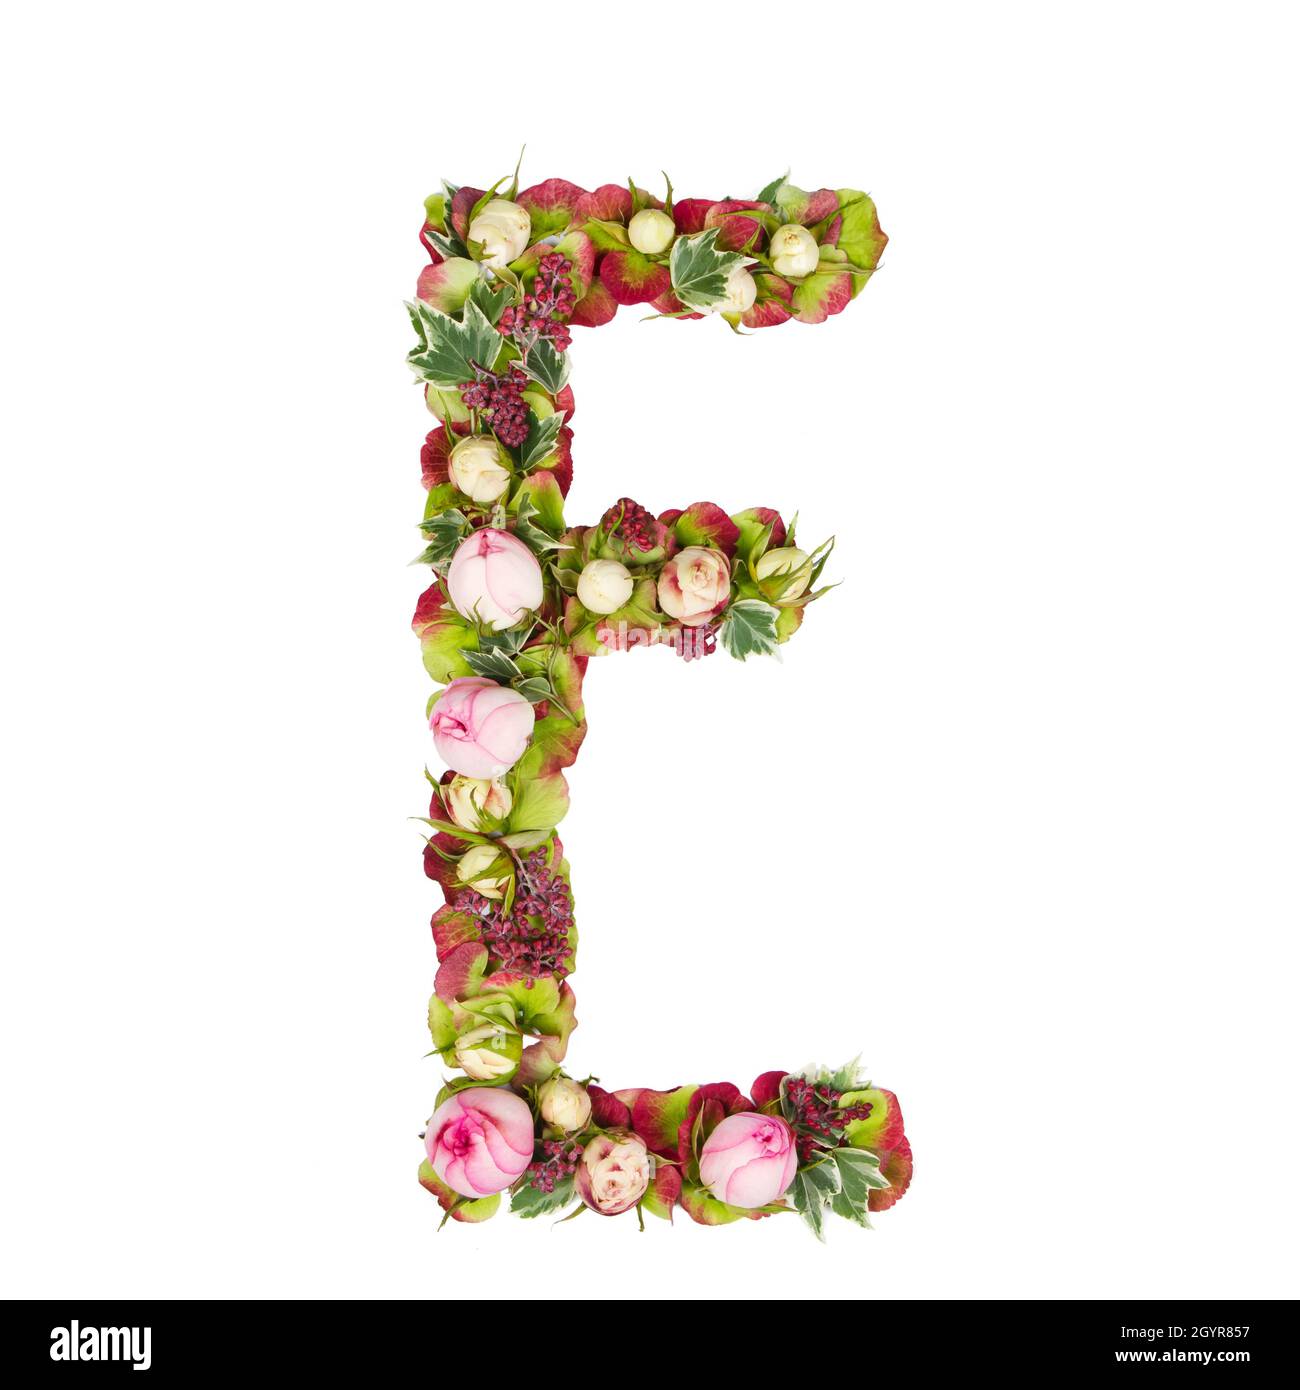 Großbuchstabe E Teil eines Satzes von Buchstaben, Zahlen und Symbolen des Alphabets mit Blumen, Zweigen und Blättern auf weißem Hintergrund Stockfoto